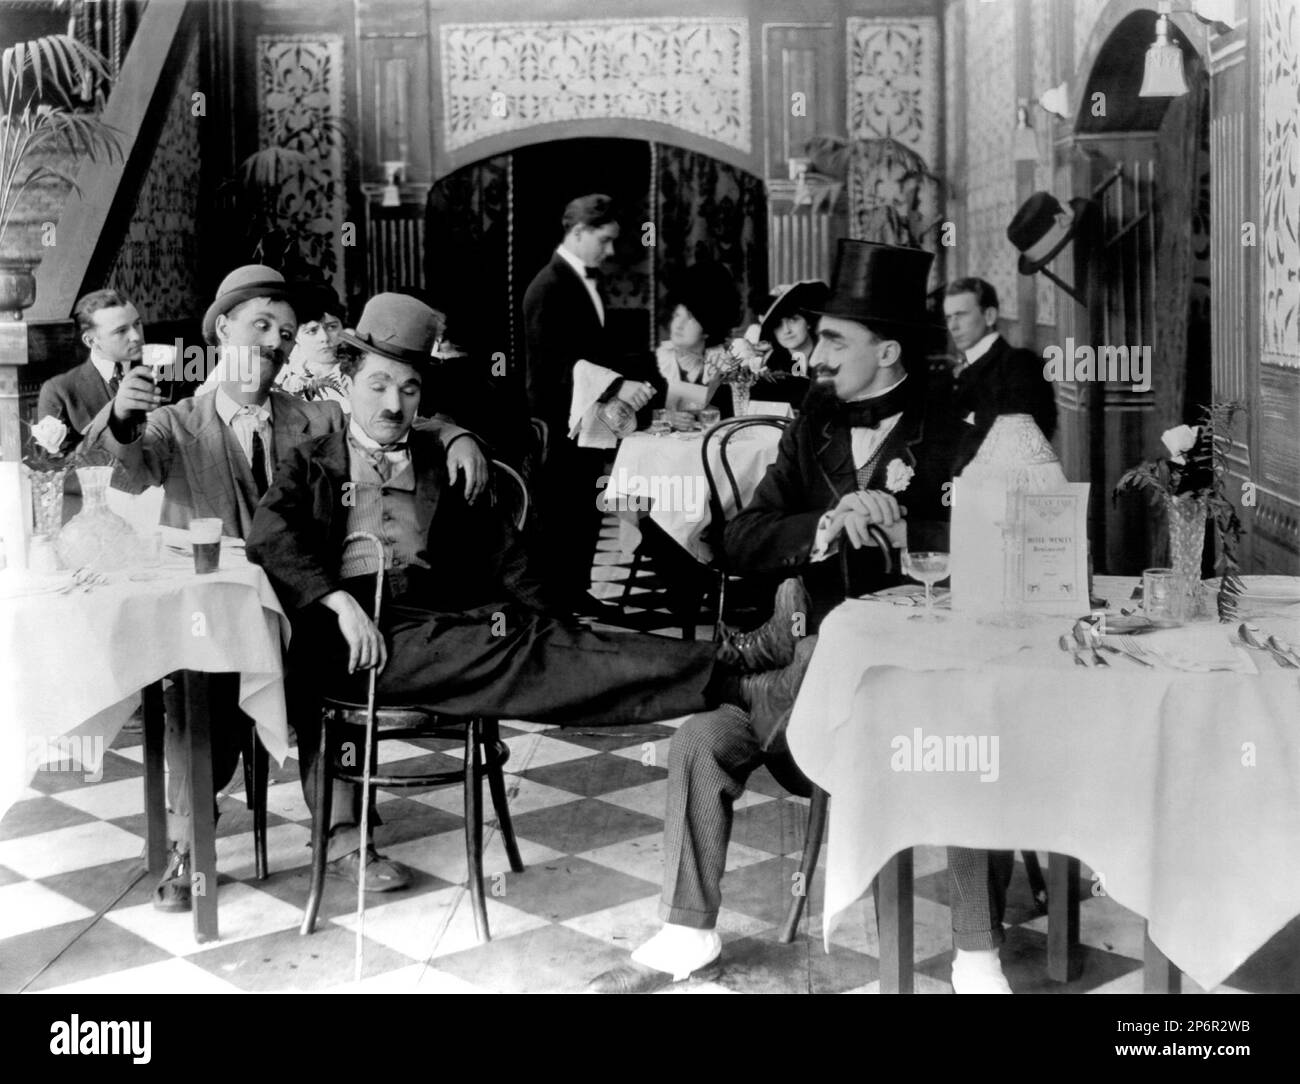 1915 : The silent movie actor and movie director CHARLES CHAPLIN ( 1889 - 1977 ) in A NIGHT OUT  with BEN TURPIN - CINEMA MUTO  - FILM -  - portrait - ritratto - hat - cappello - regista cinematografico - attore - ubriaco - drunk - comico - tie - cravatta  ---- Archivio GBB      Archivio Stock Photo